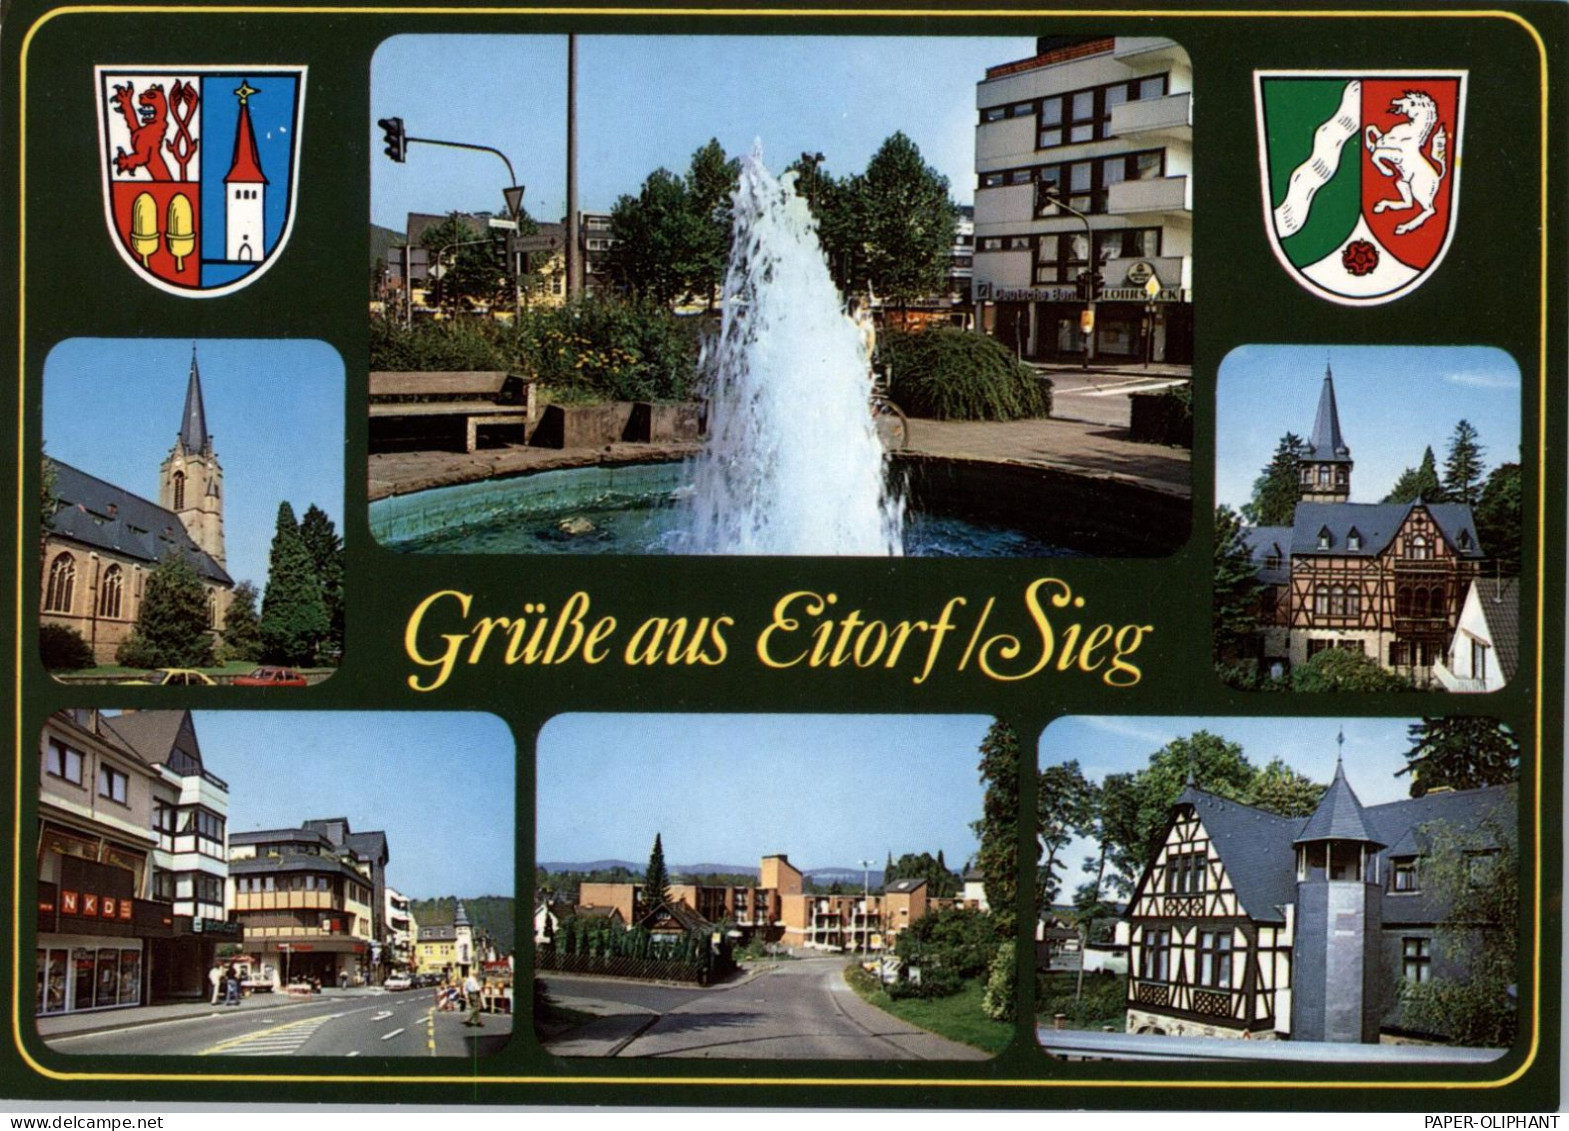 5208 EITORF, Mehrbild-AK, Stadtwappen - Siegburg